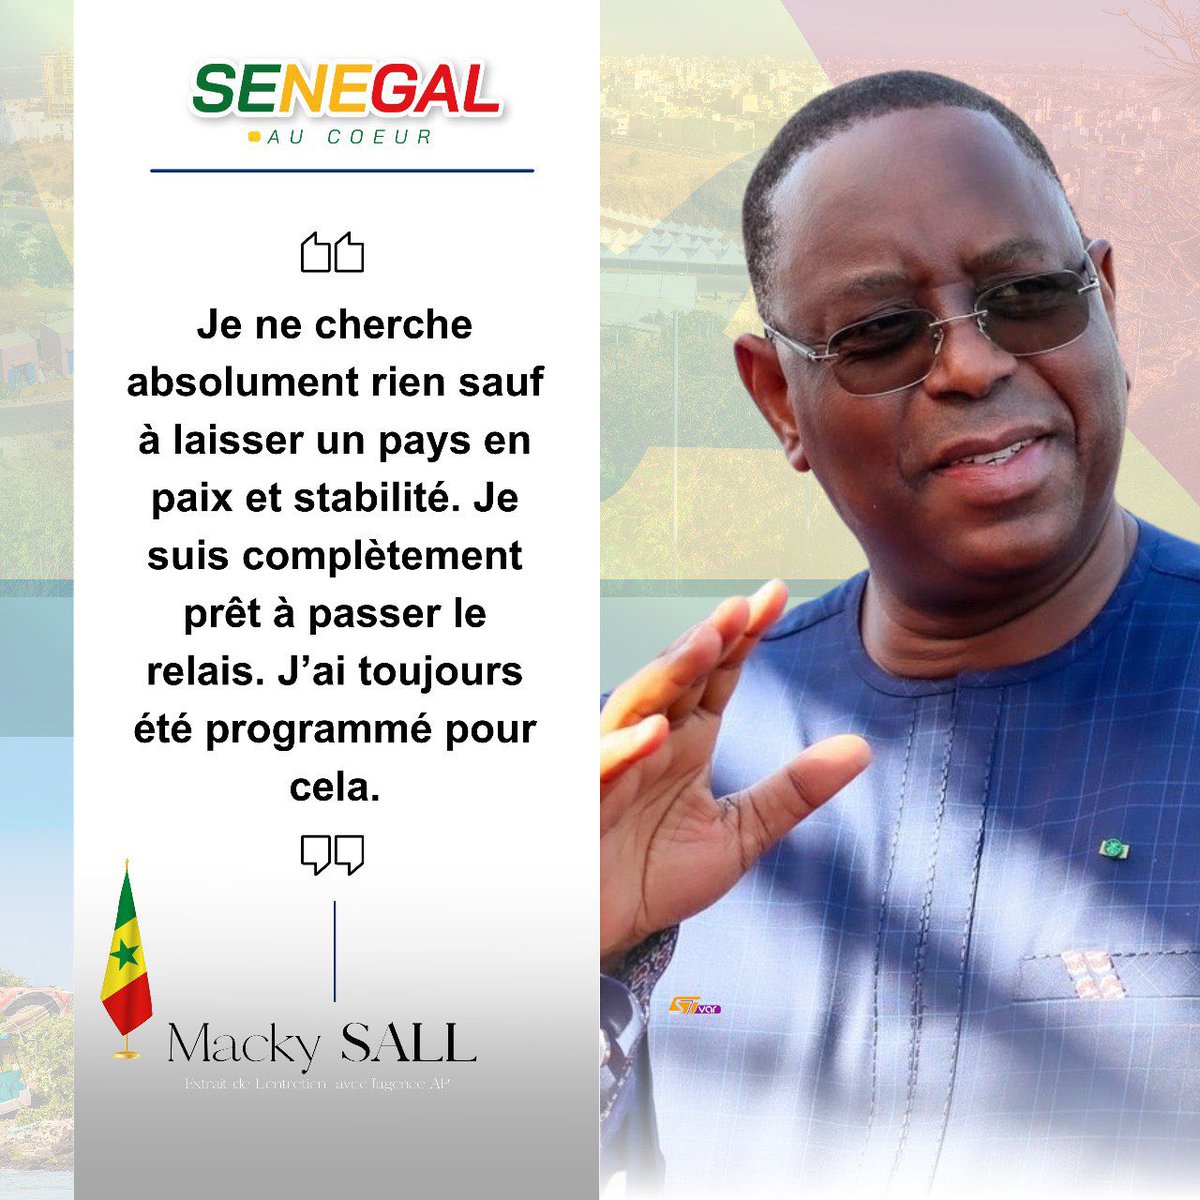 Merci à son excellence le président @Macky_Sall le père de la nation 

#FreeSenegal #CoteDIvoire #DialogueNational #OuiAuReport